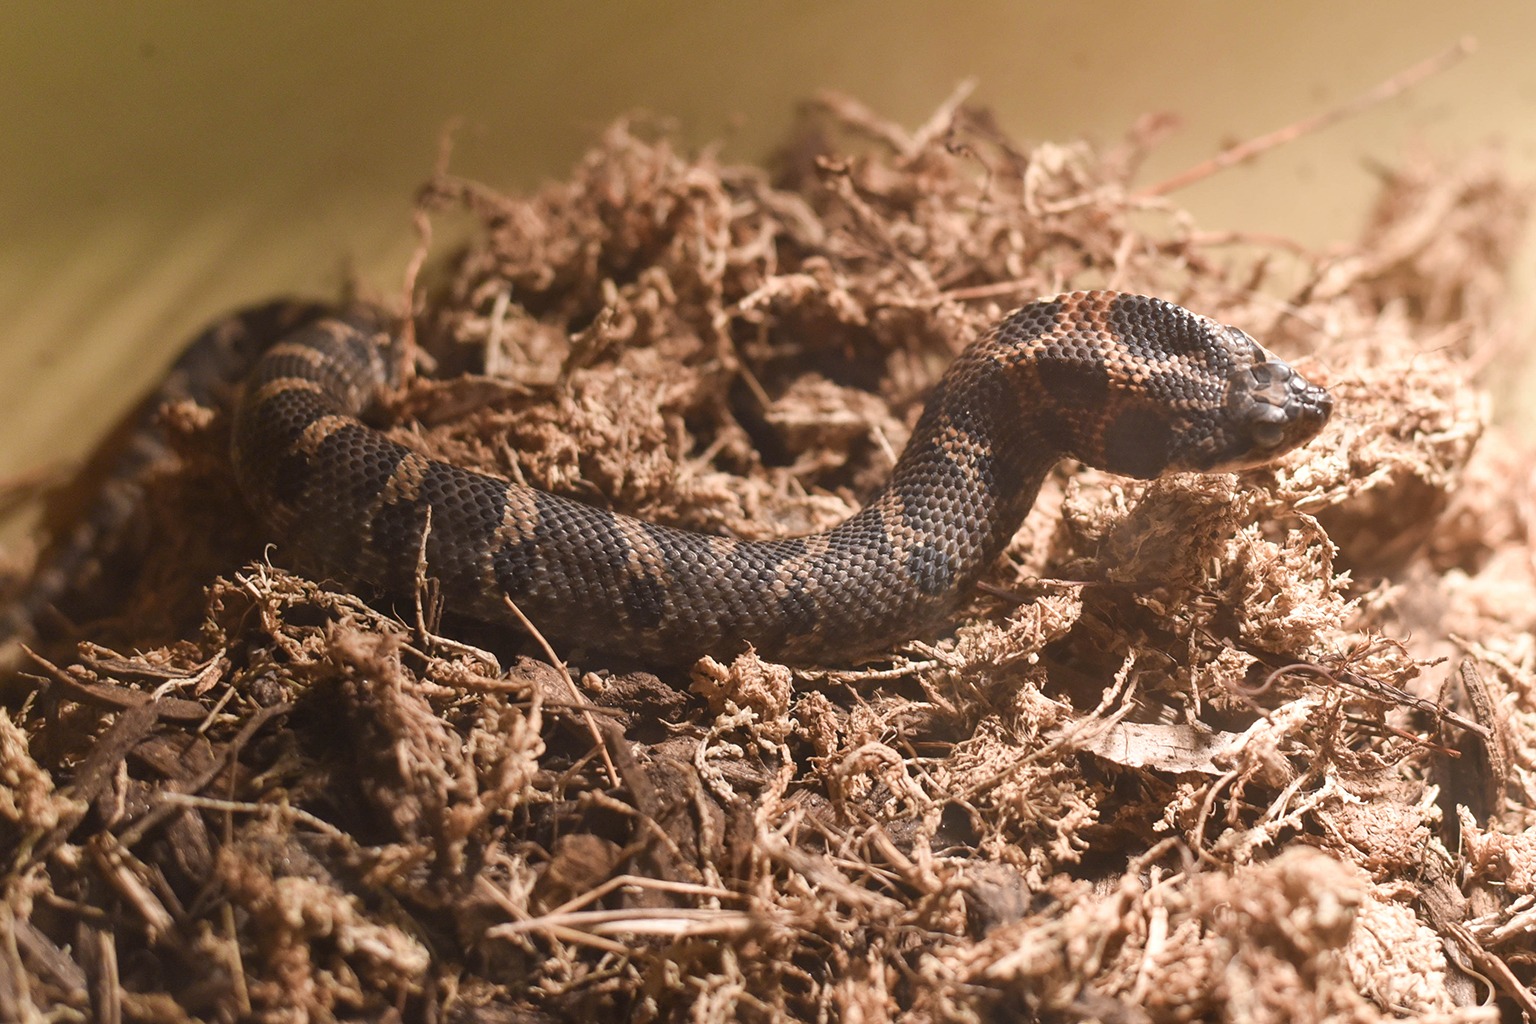 Eastern Hognose Snake | The Maryland Zoo